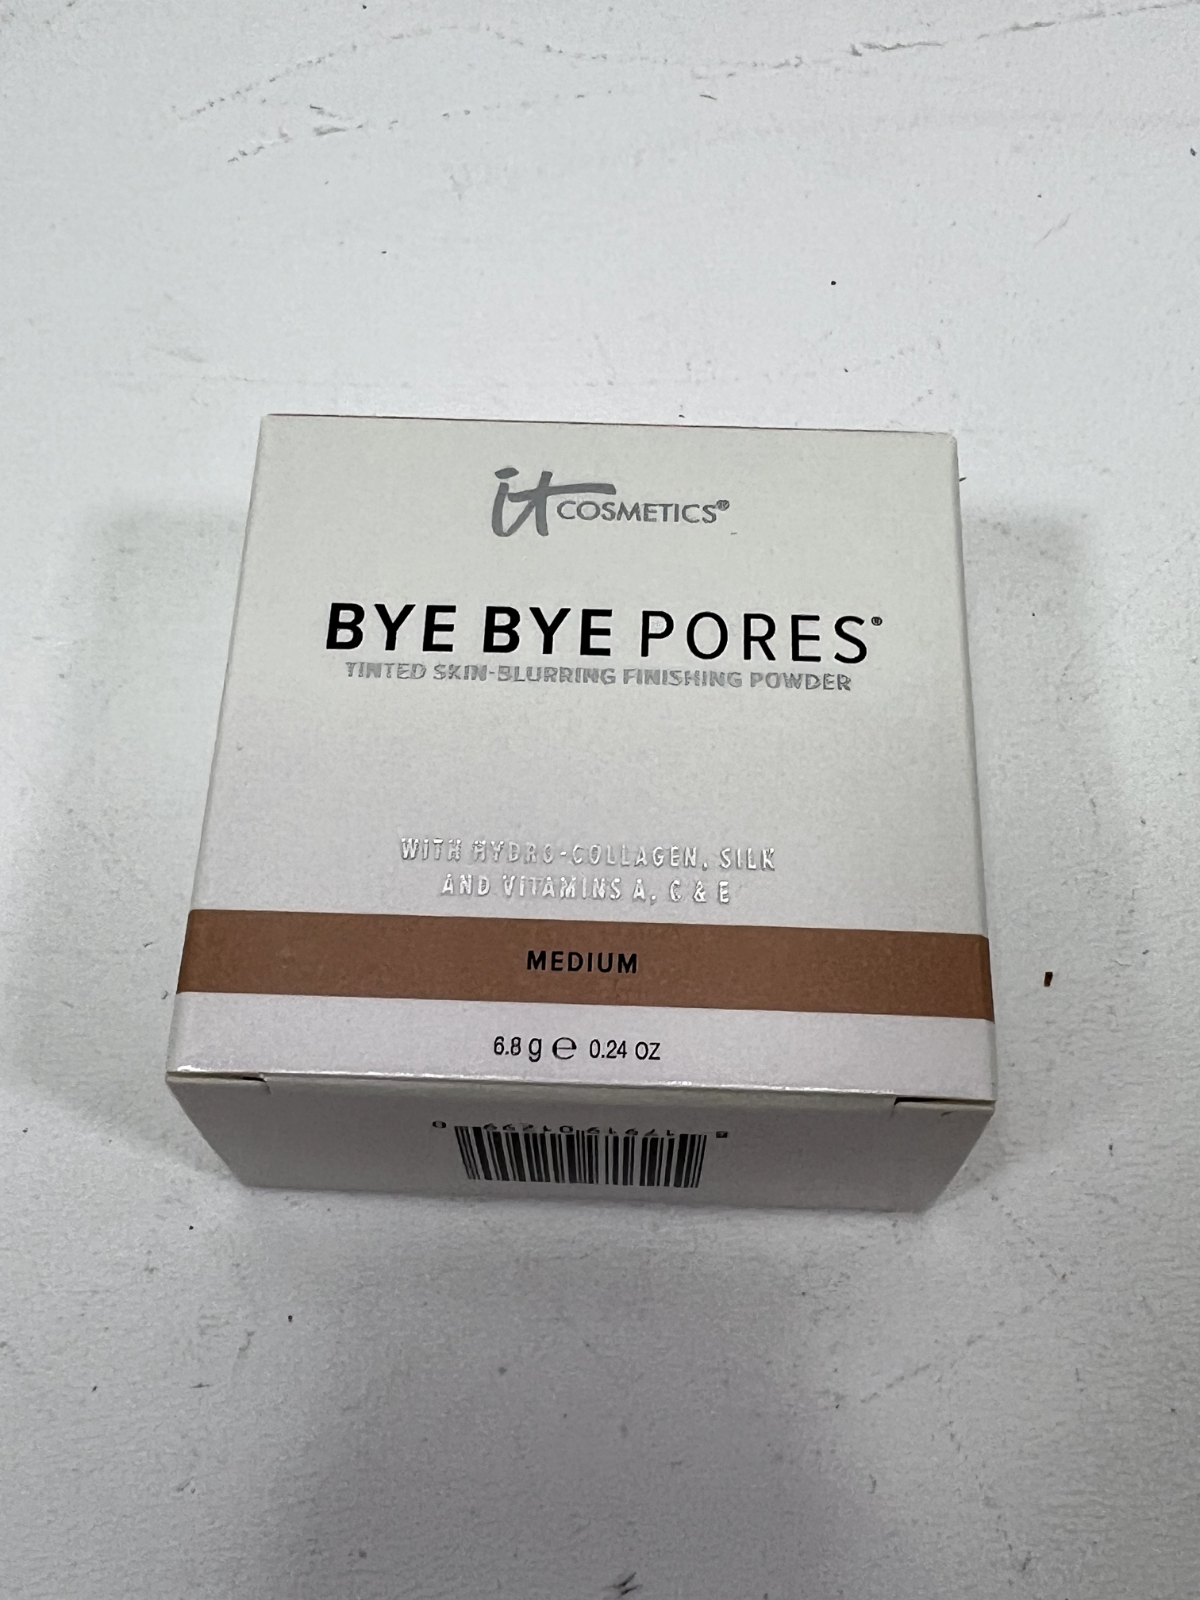 IT COSMETICS -  Bye Bye Pores Loose Powder - MEDIUM - 0.24 oz FULL SIZE - NIB - $37.39